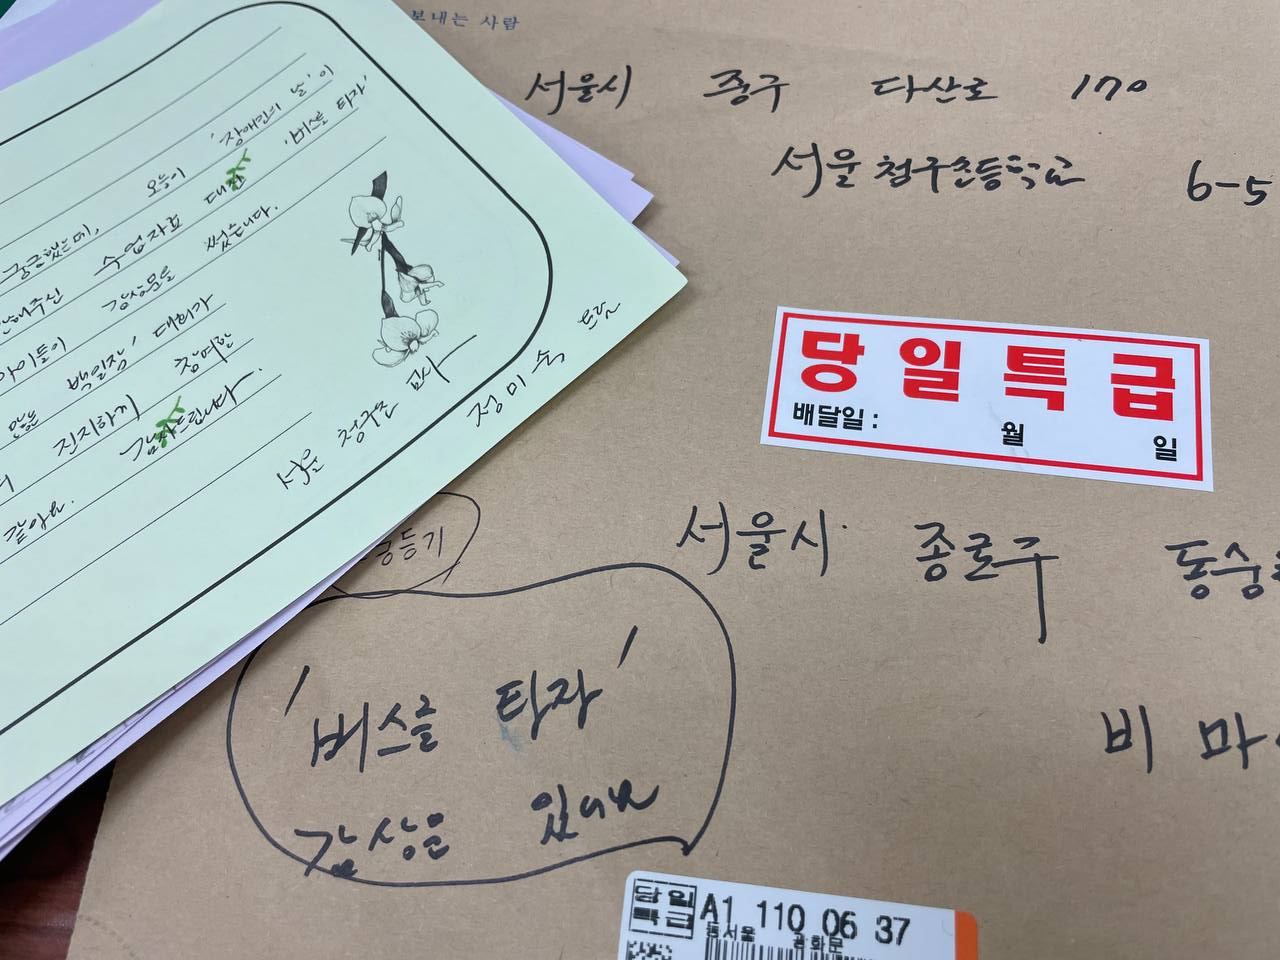 서울청구초등학교 6학년 5반에서 온 〈버스를 타자〉 감상문. 우편봉투 앞에 ‘당일특급’이라는 스티커가 붙어 있다. 